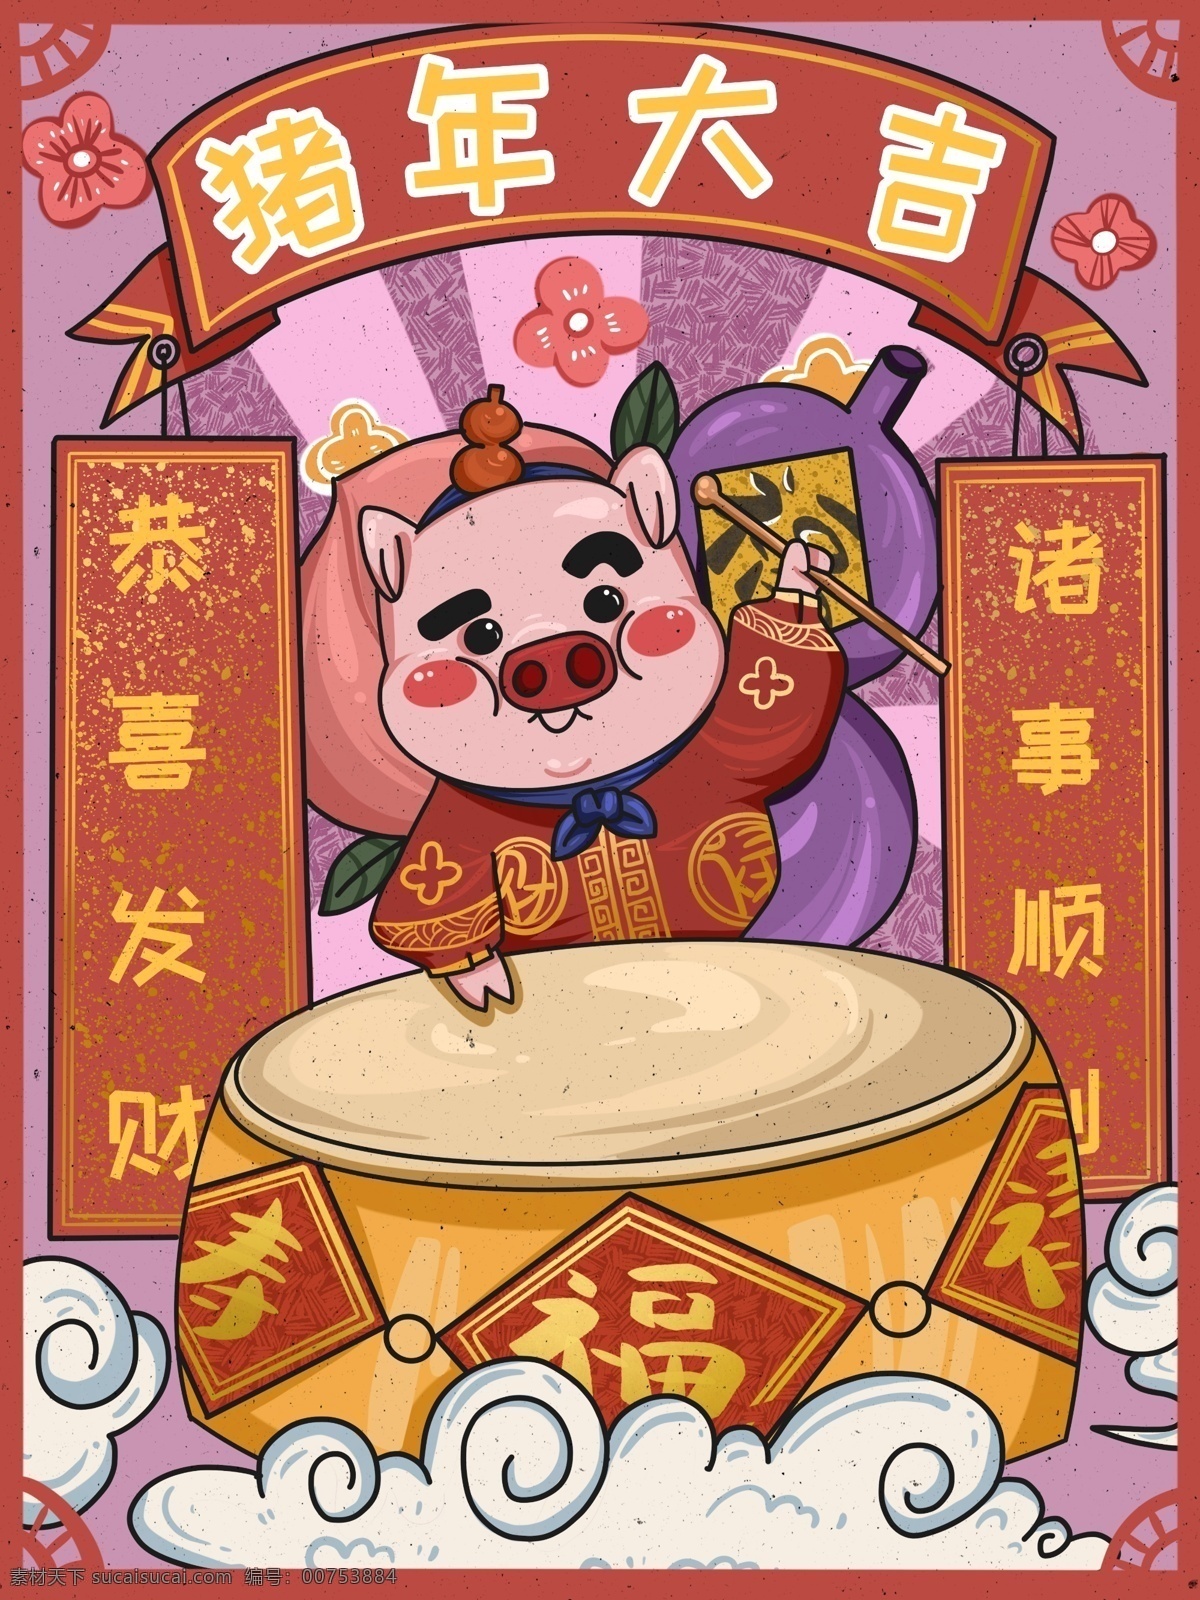 新年 快乐 潮 漫 卡通 小 猪 打鼓 可爱 喜庆 插画 小猪 葫芦 中国风 猪年 潮漫卡通